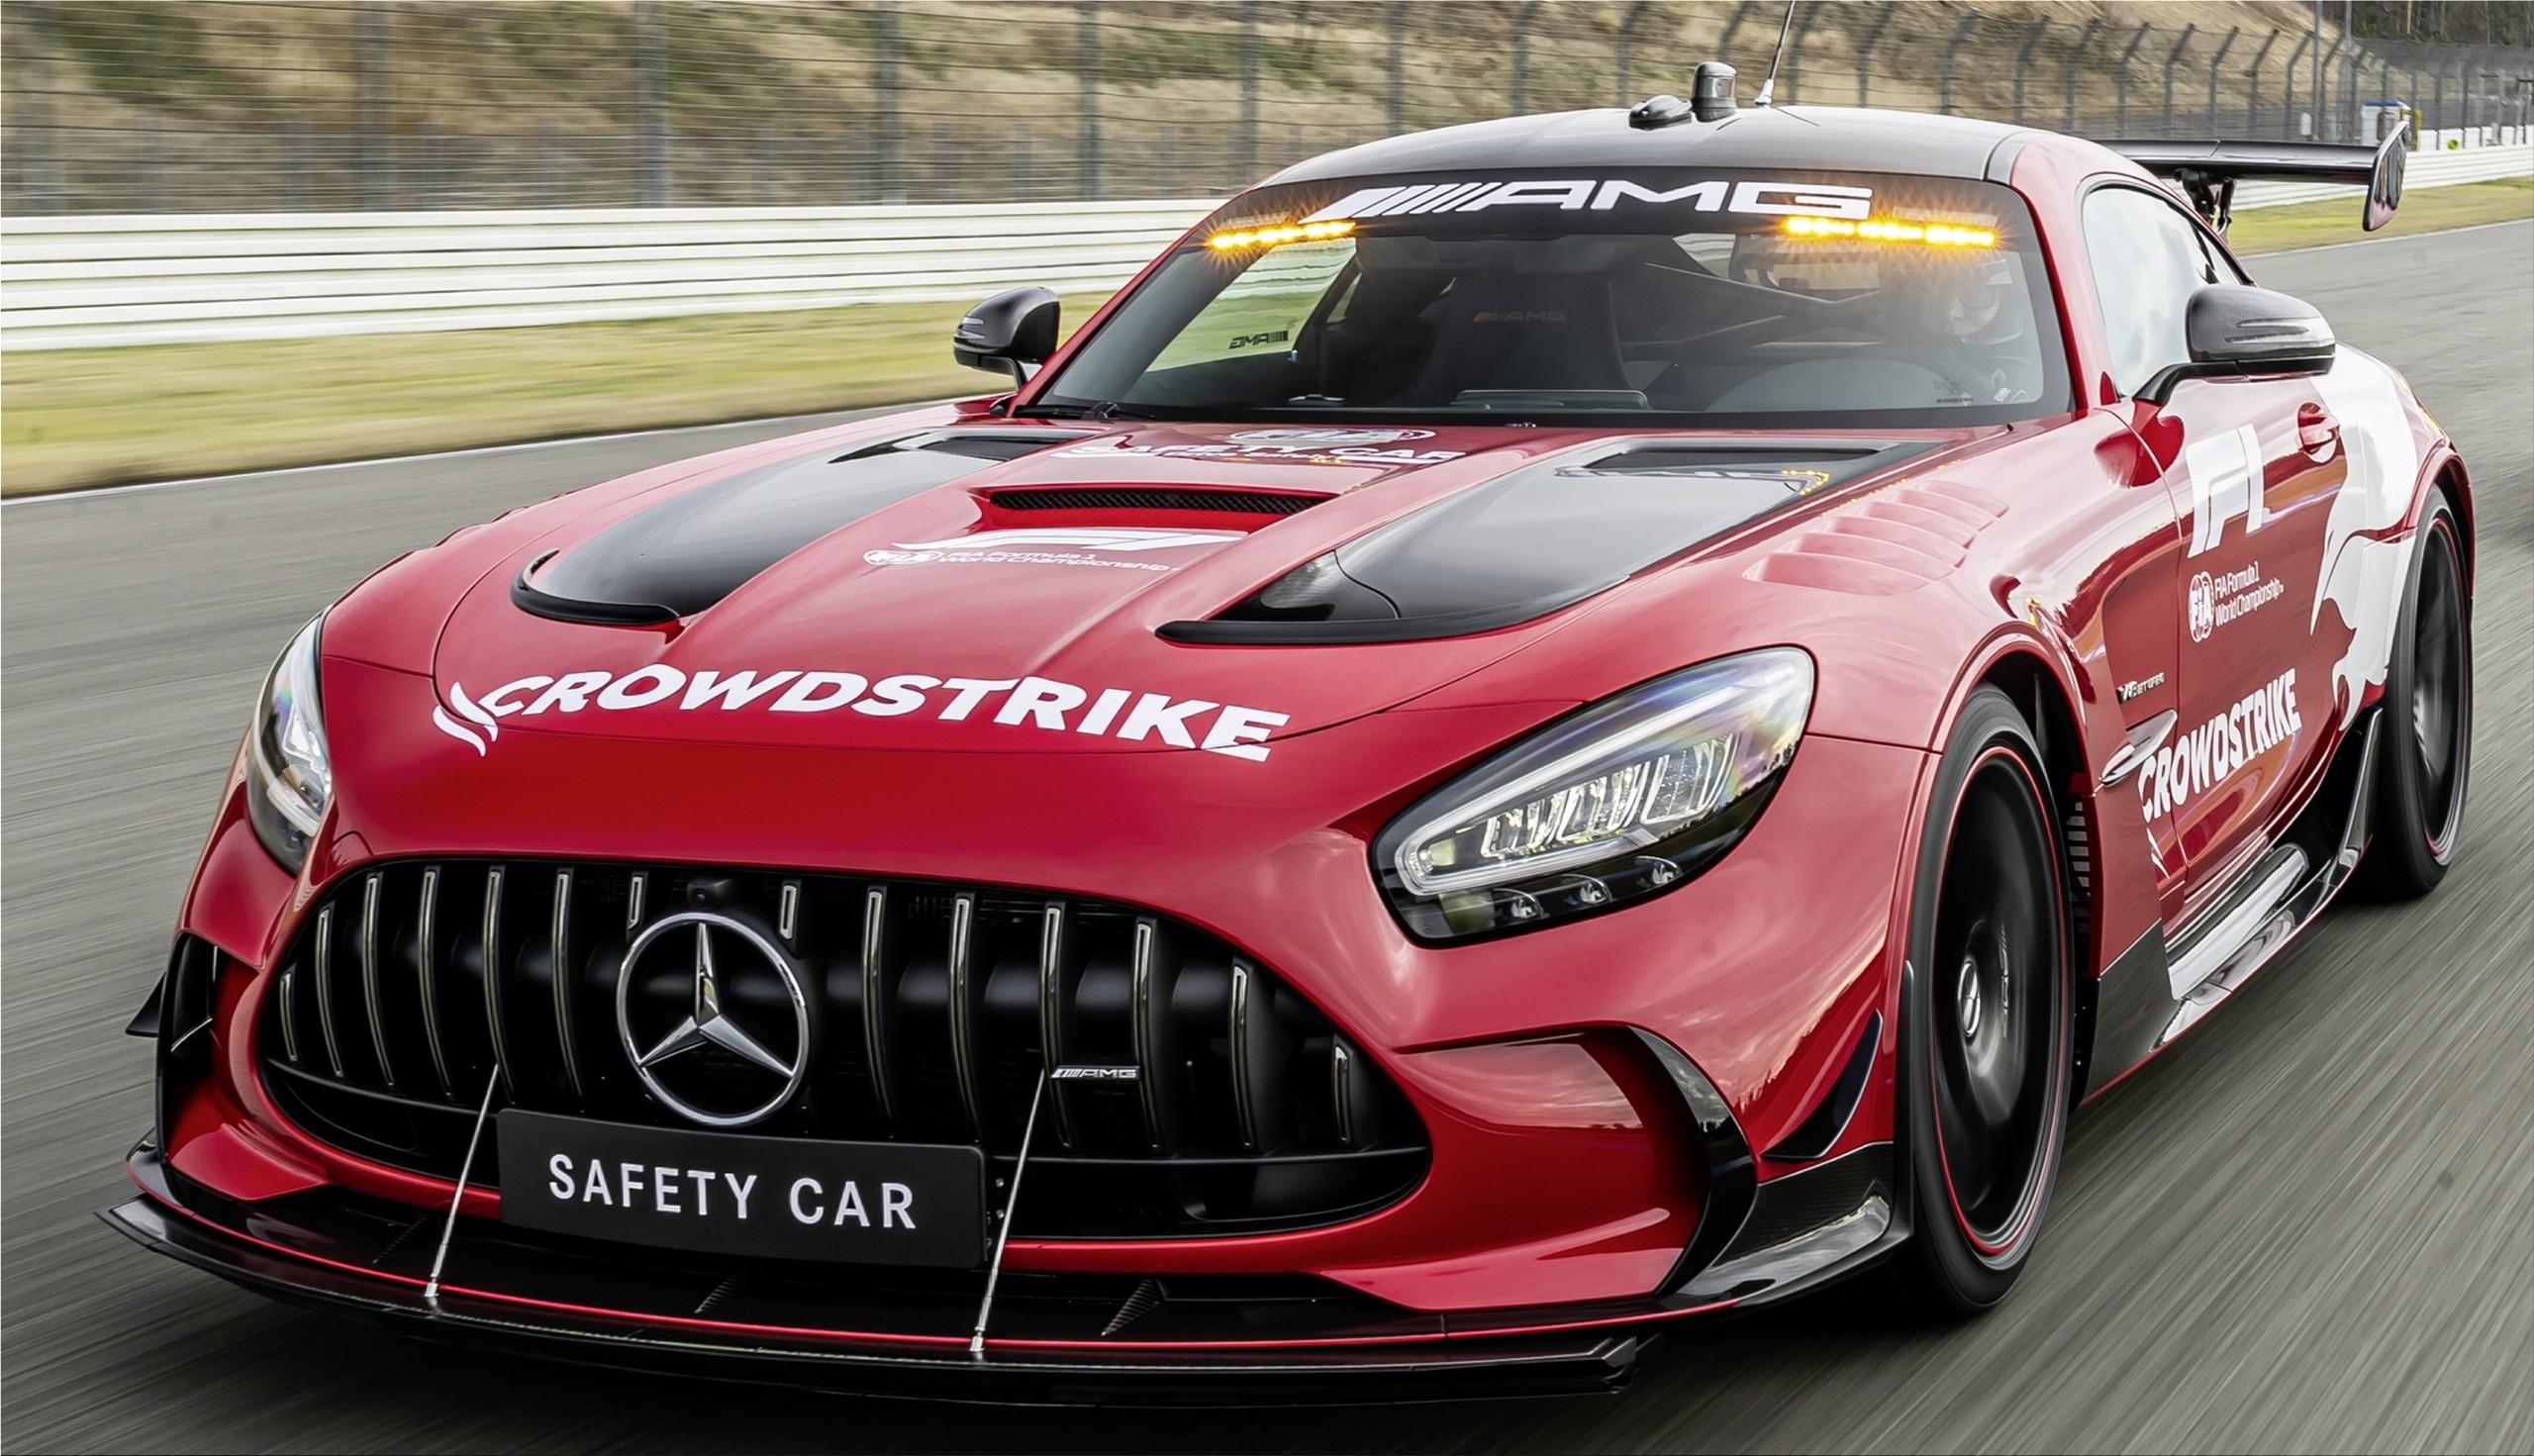 Fórmula 1 terá novo Safety Car da Mercedes-Benz que chega a 325 km/h